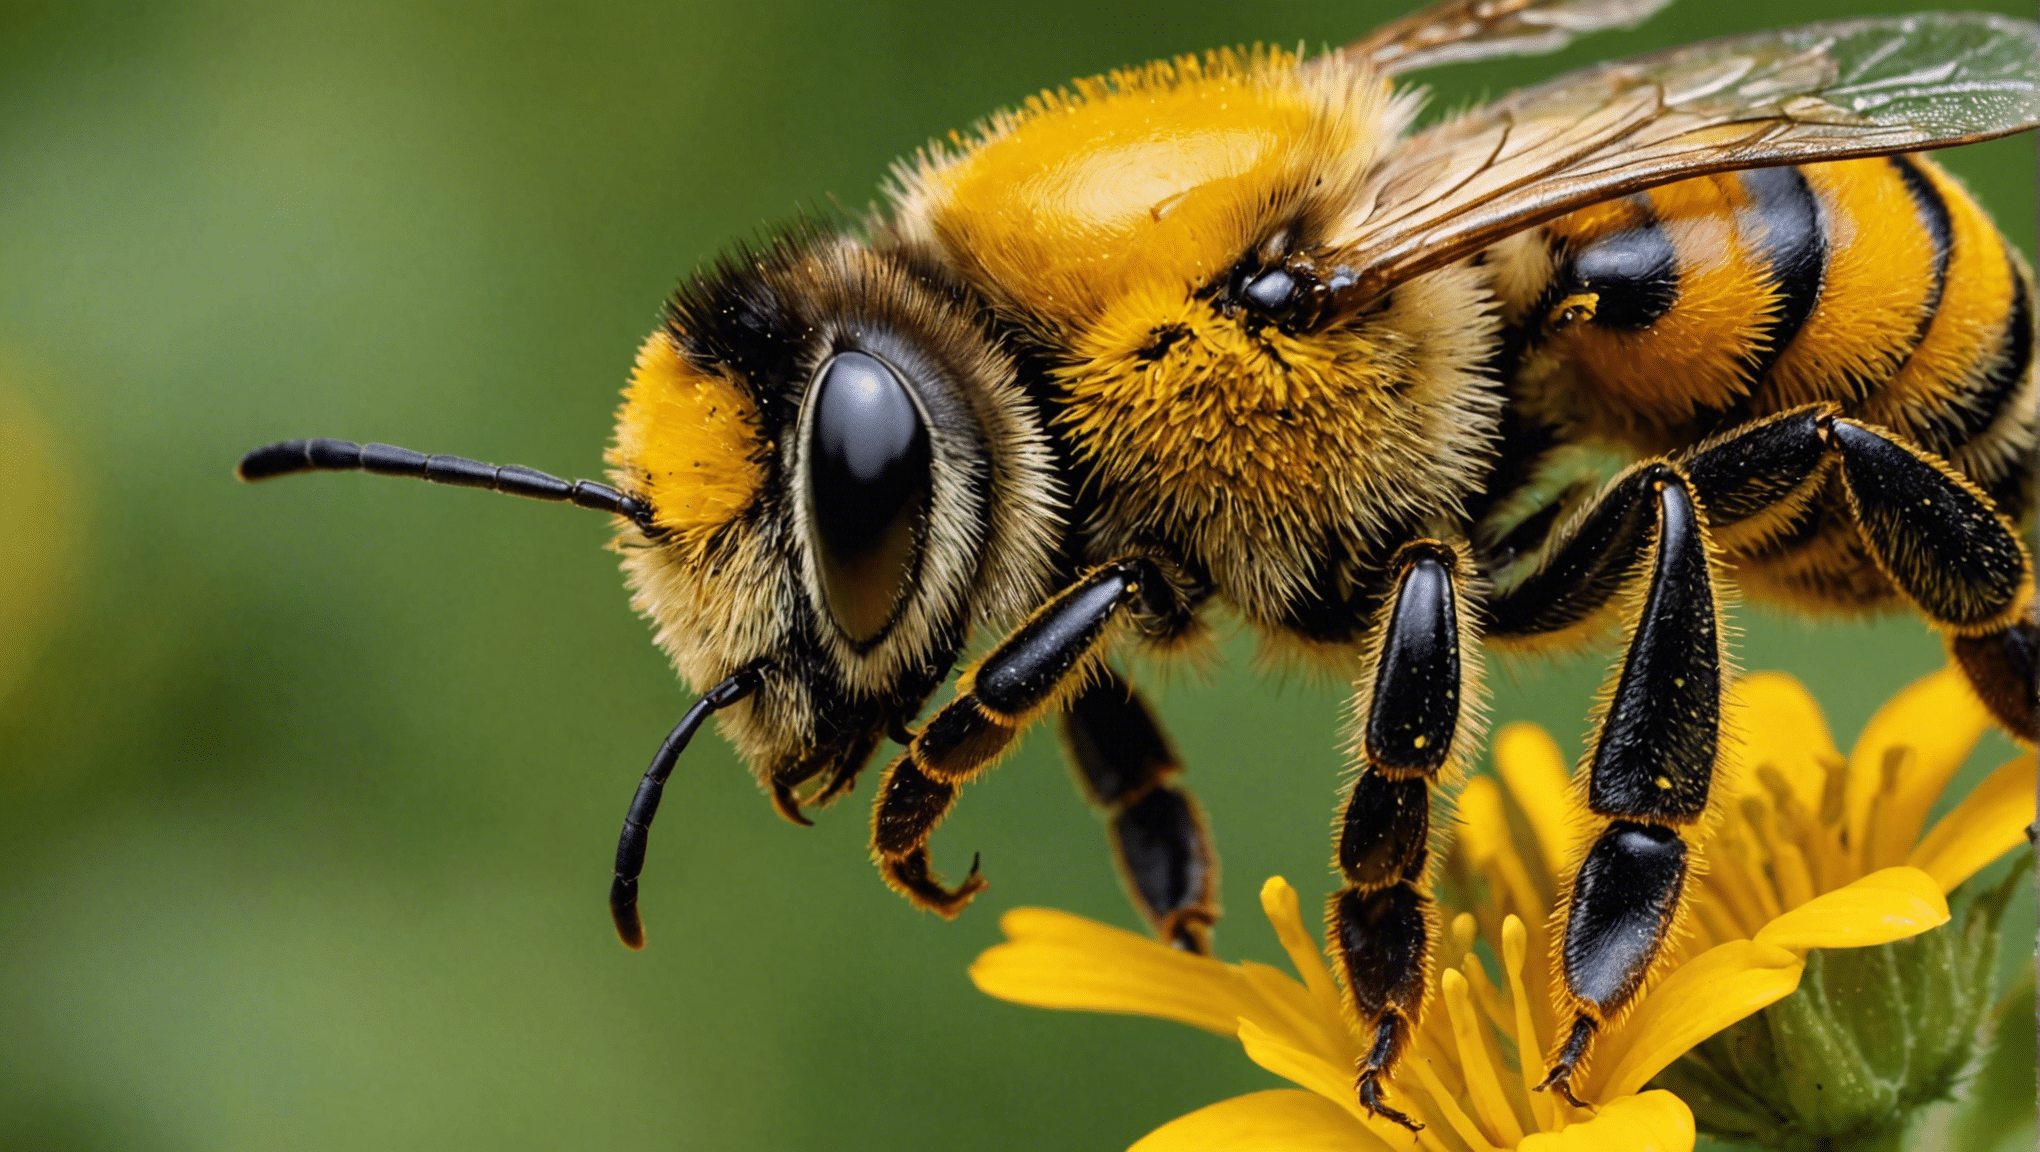 scopri perché l'ape svolge un ruolo essenziale come custode della diversità vegetale e come sia essenziale per il nostro ecosistema.